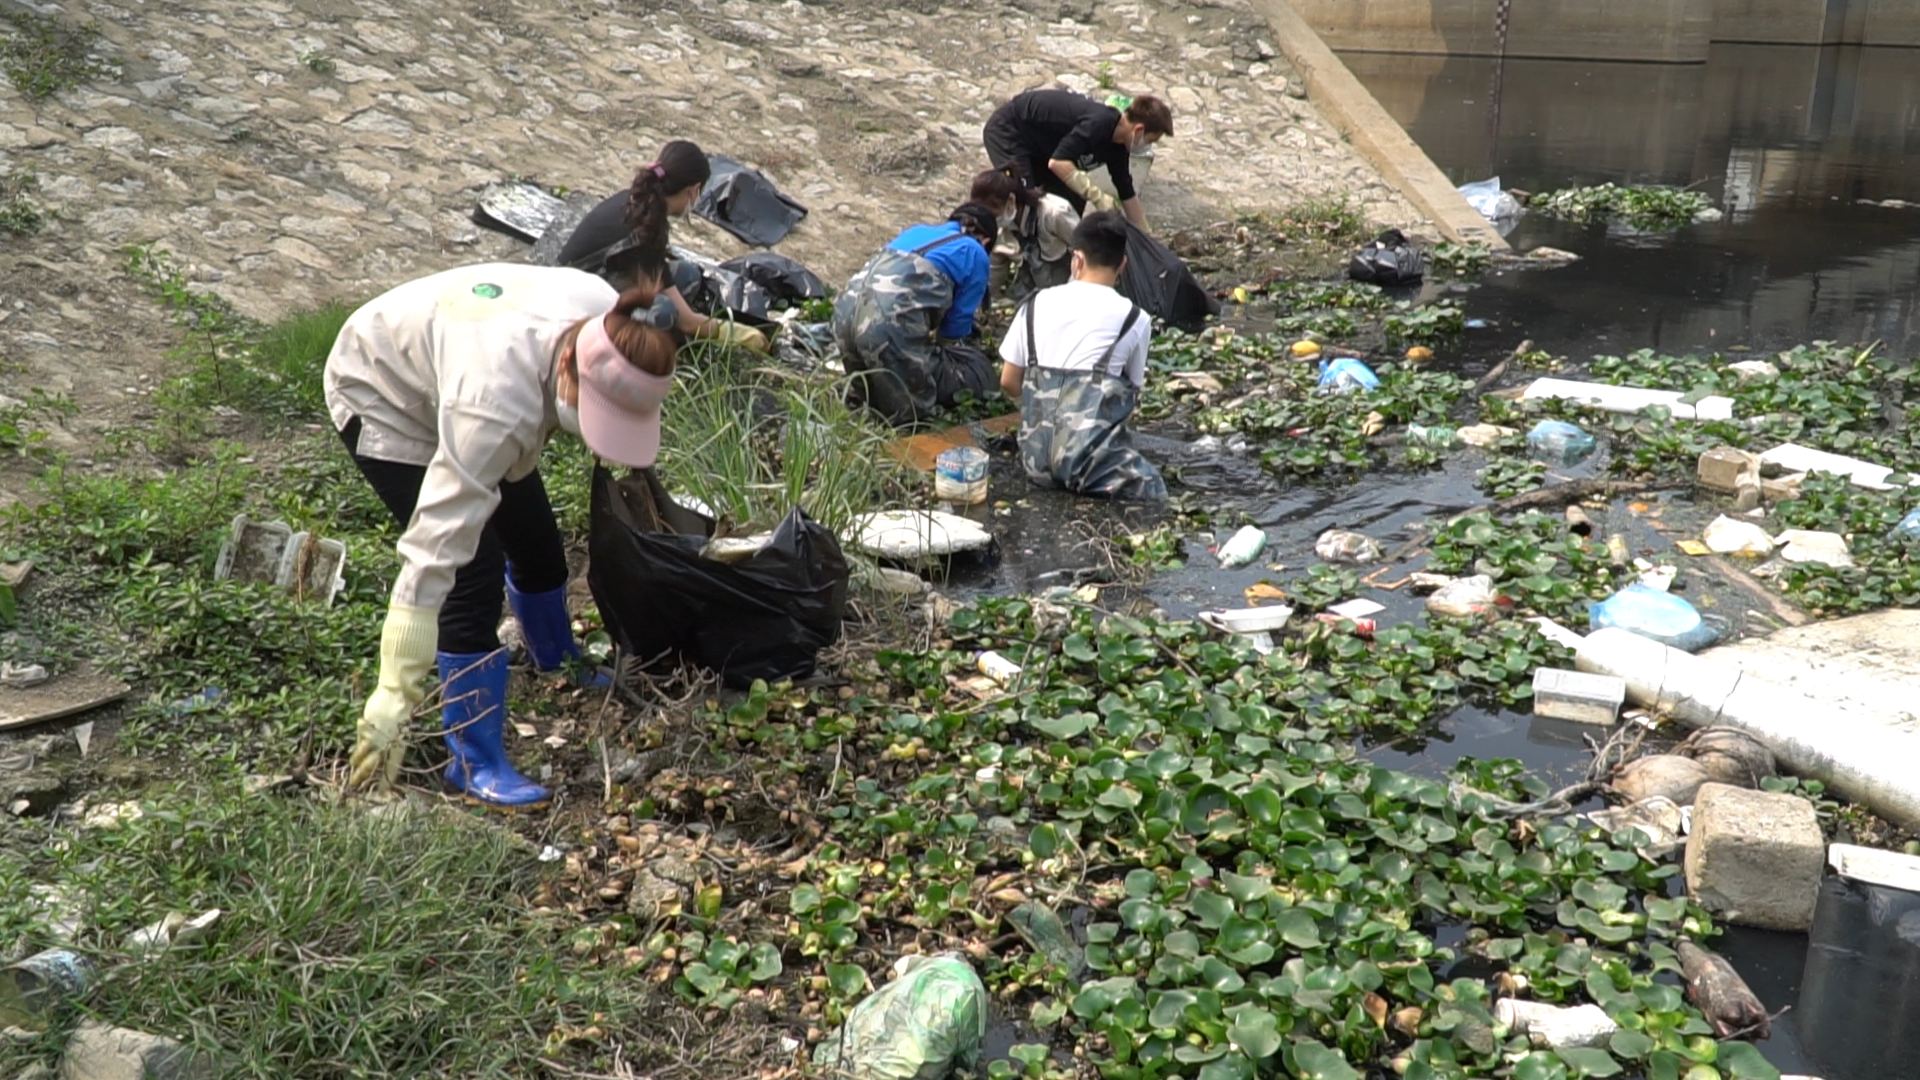 Nhóm bạn trẻ ngâm mình trong ‘dòng sông rác’ giữa trưa để giúp Hà Nội xanh hơn - Ảnh 2.